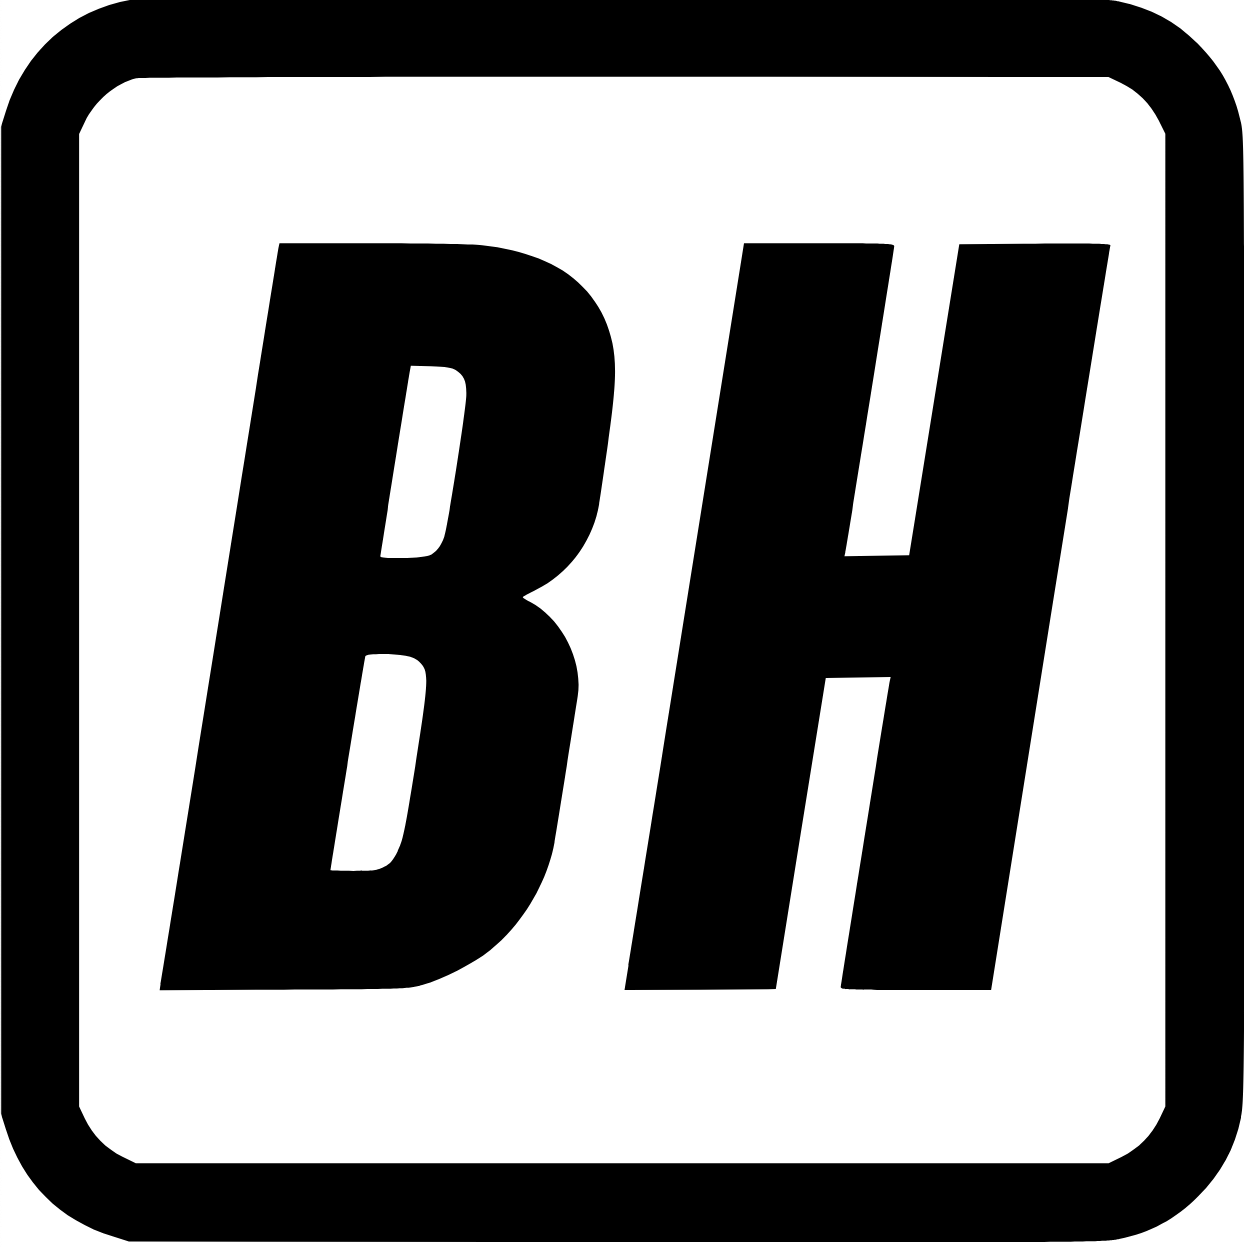 Logo der Website Bruno Hönel: Initialen "BH"